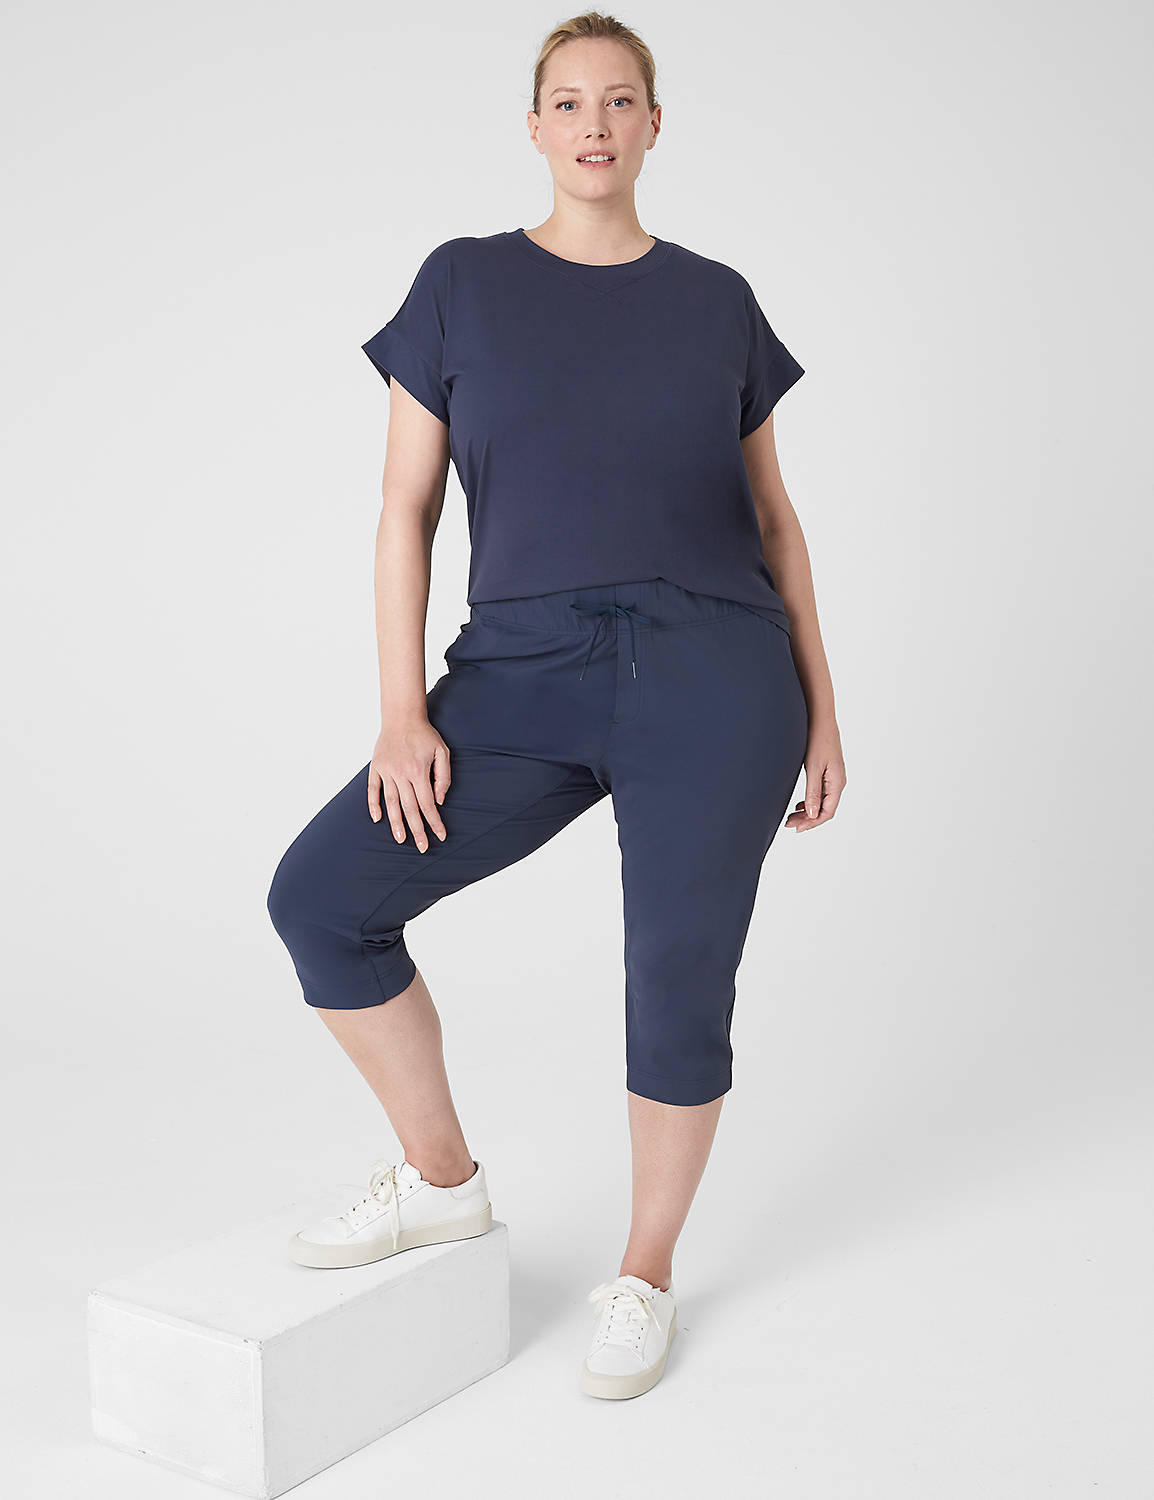 Livi Mid Rise Knit Capri Trouser S Product Image 3